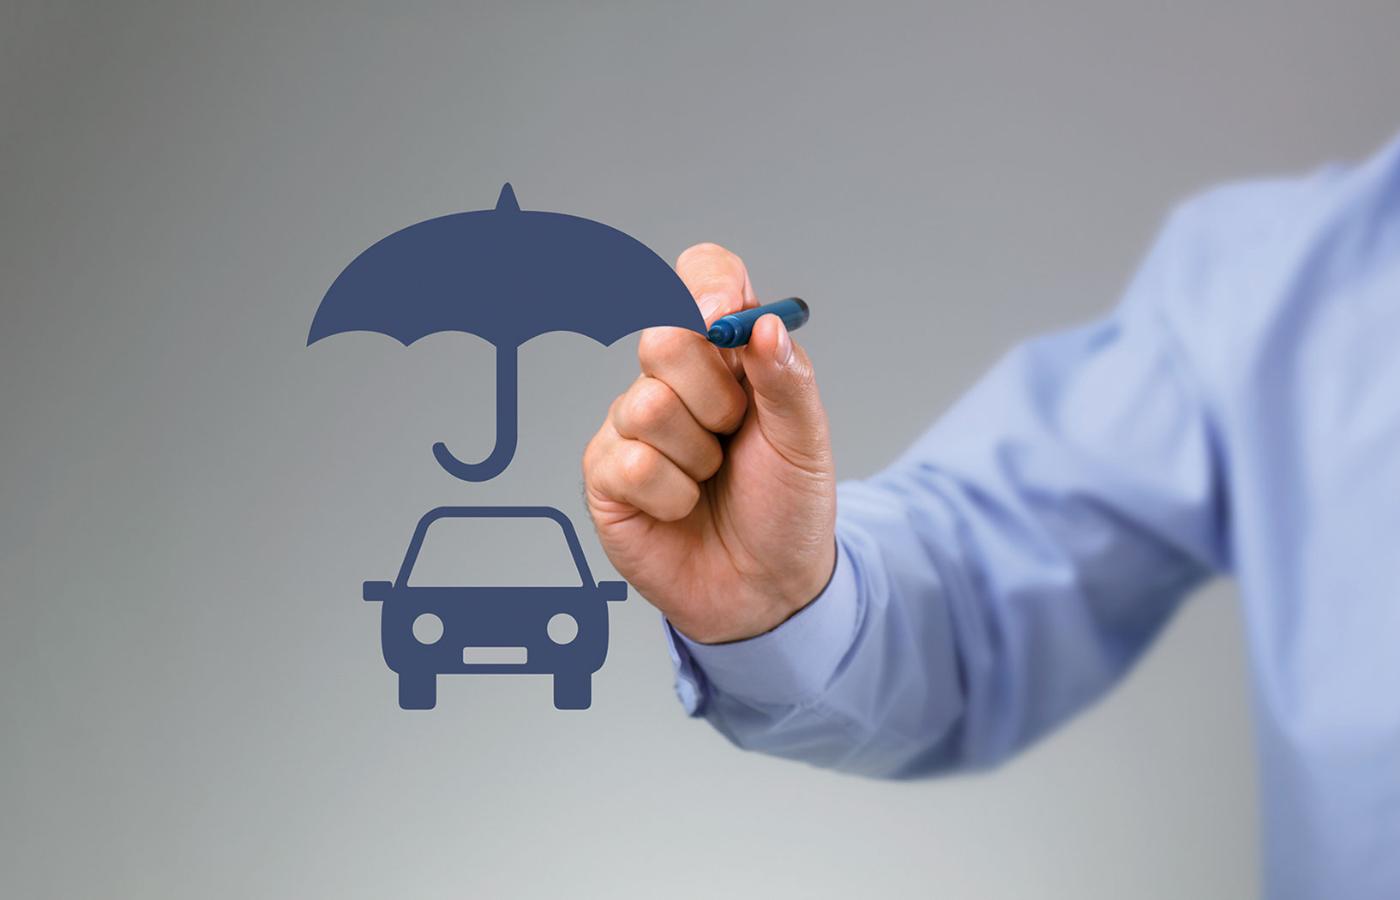 Ubezpieczenie OC dotyczy odpowiedzialności za szkody wyrządzone przez użytkownika pojazdu, ale przy wyborze polisy warto zwrócić uwagę na świadczenia dodatkowe oferowane przez ubezpieczyciela.